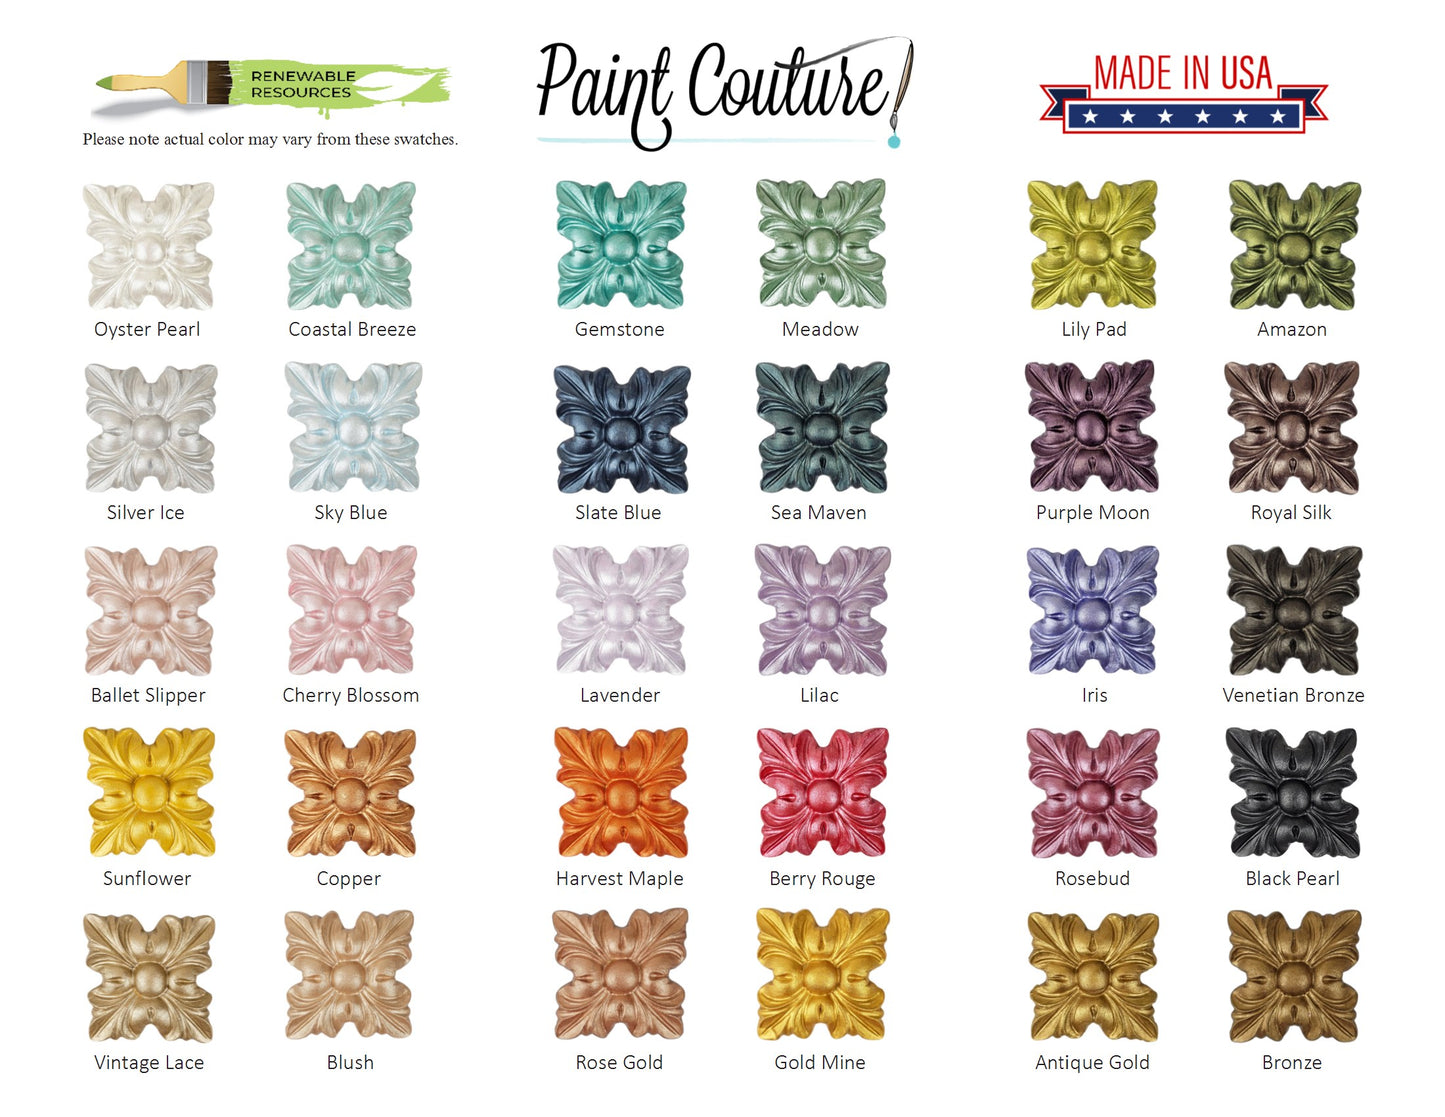 4oz Lux Metallic Bundle by Paint Couture (16 Colors)